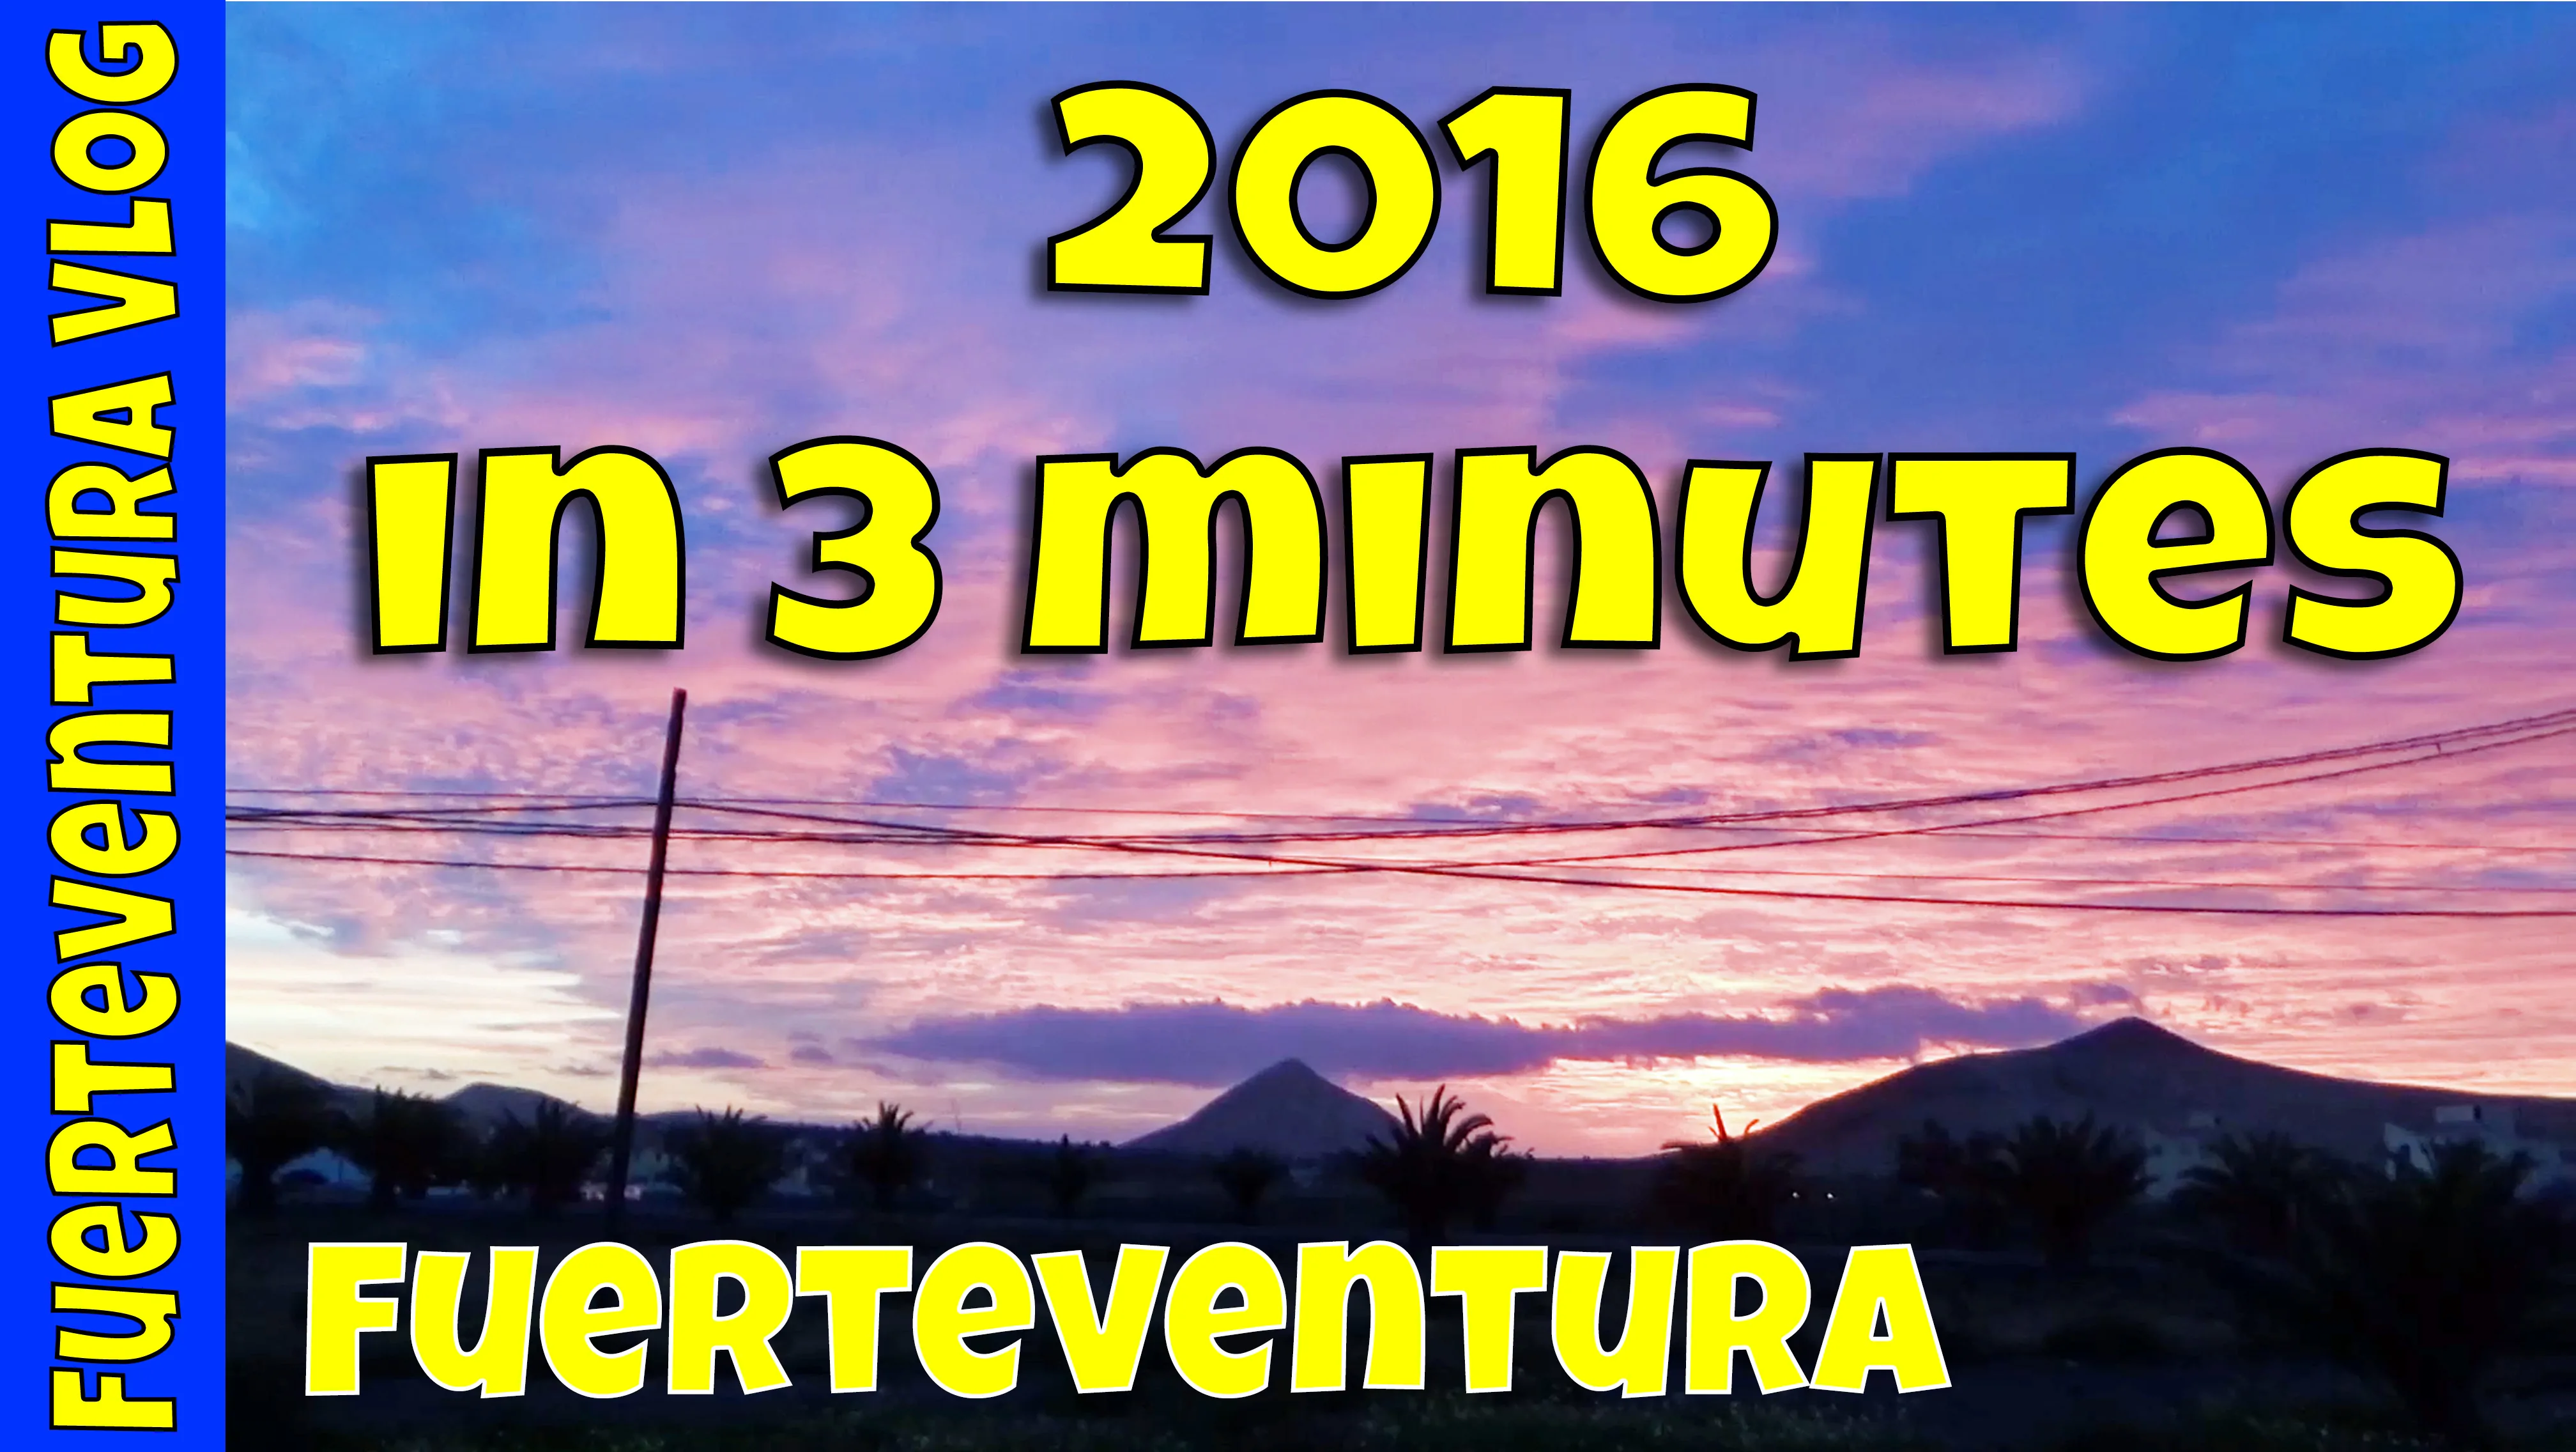 Fuerteventura – 2016 in 3 minutes